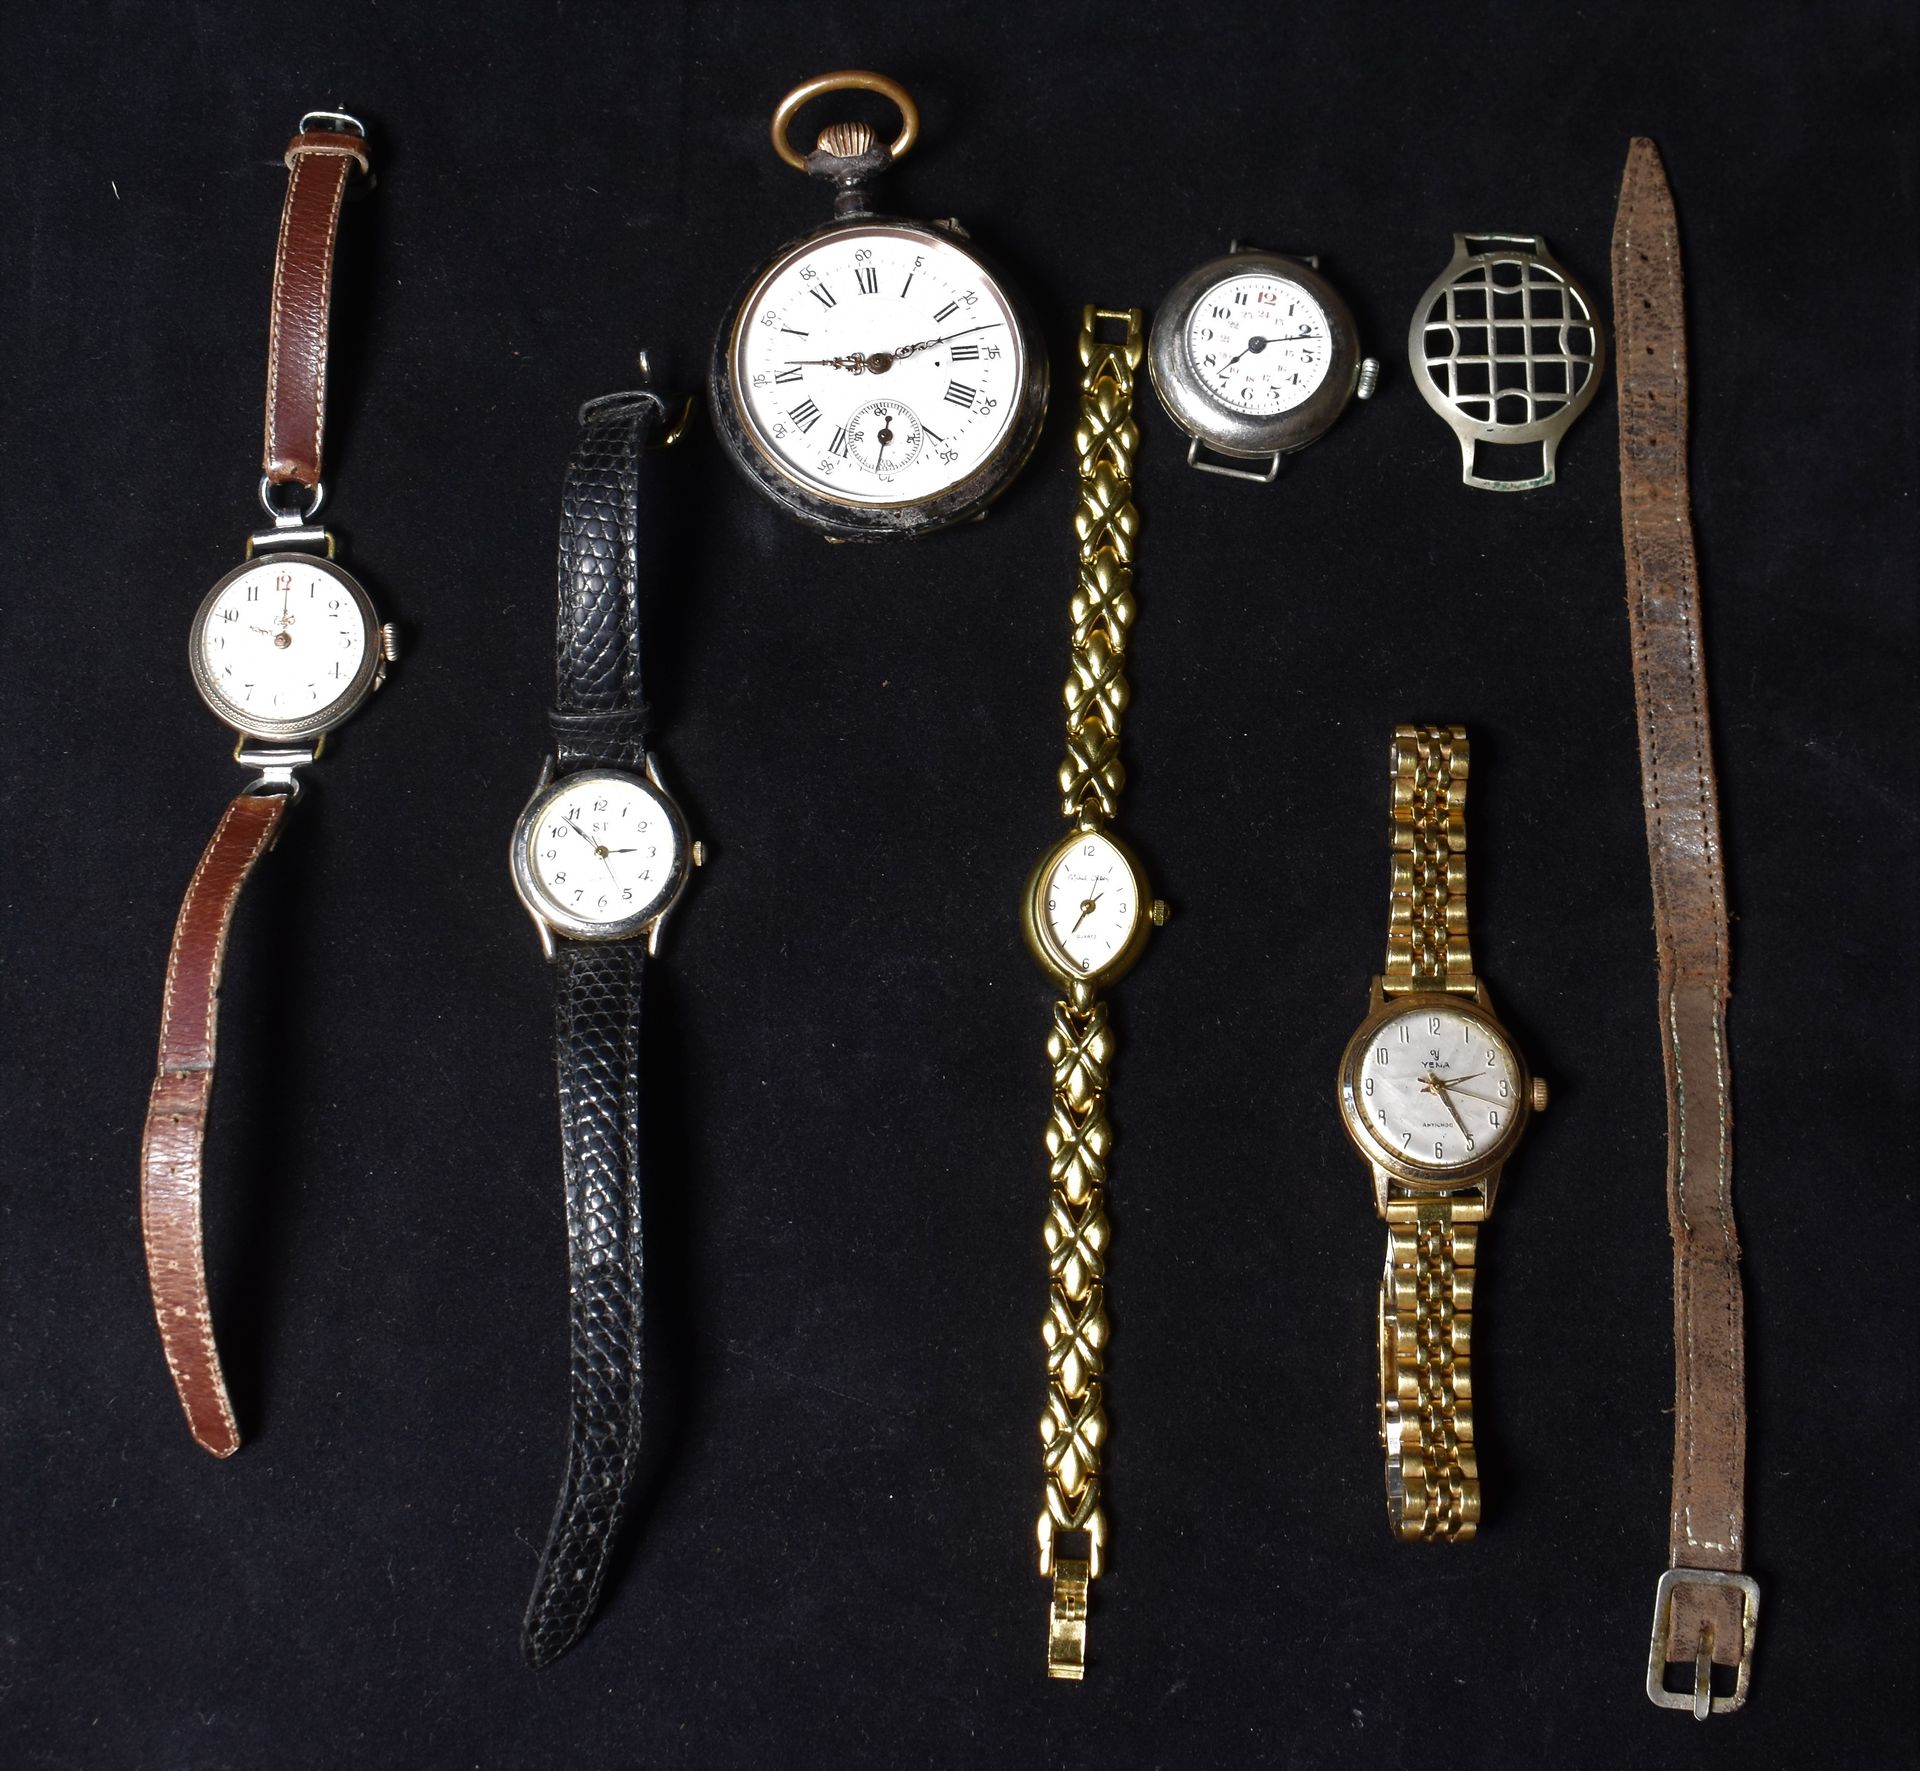 Null 银质手表，带扭索纹碗，皮表带。毛重19.9克

附：两块不同的白色金属手表和三块不同的手镯式手表。

交付给书房的地段